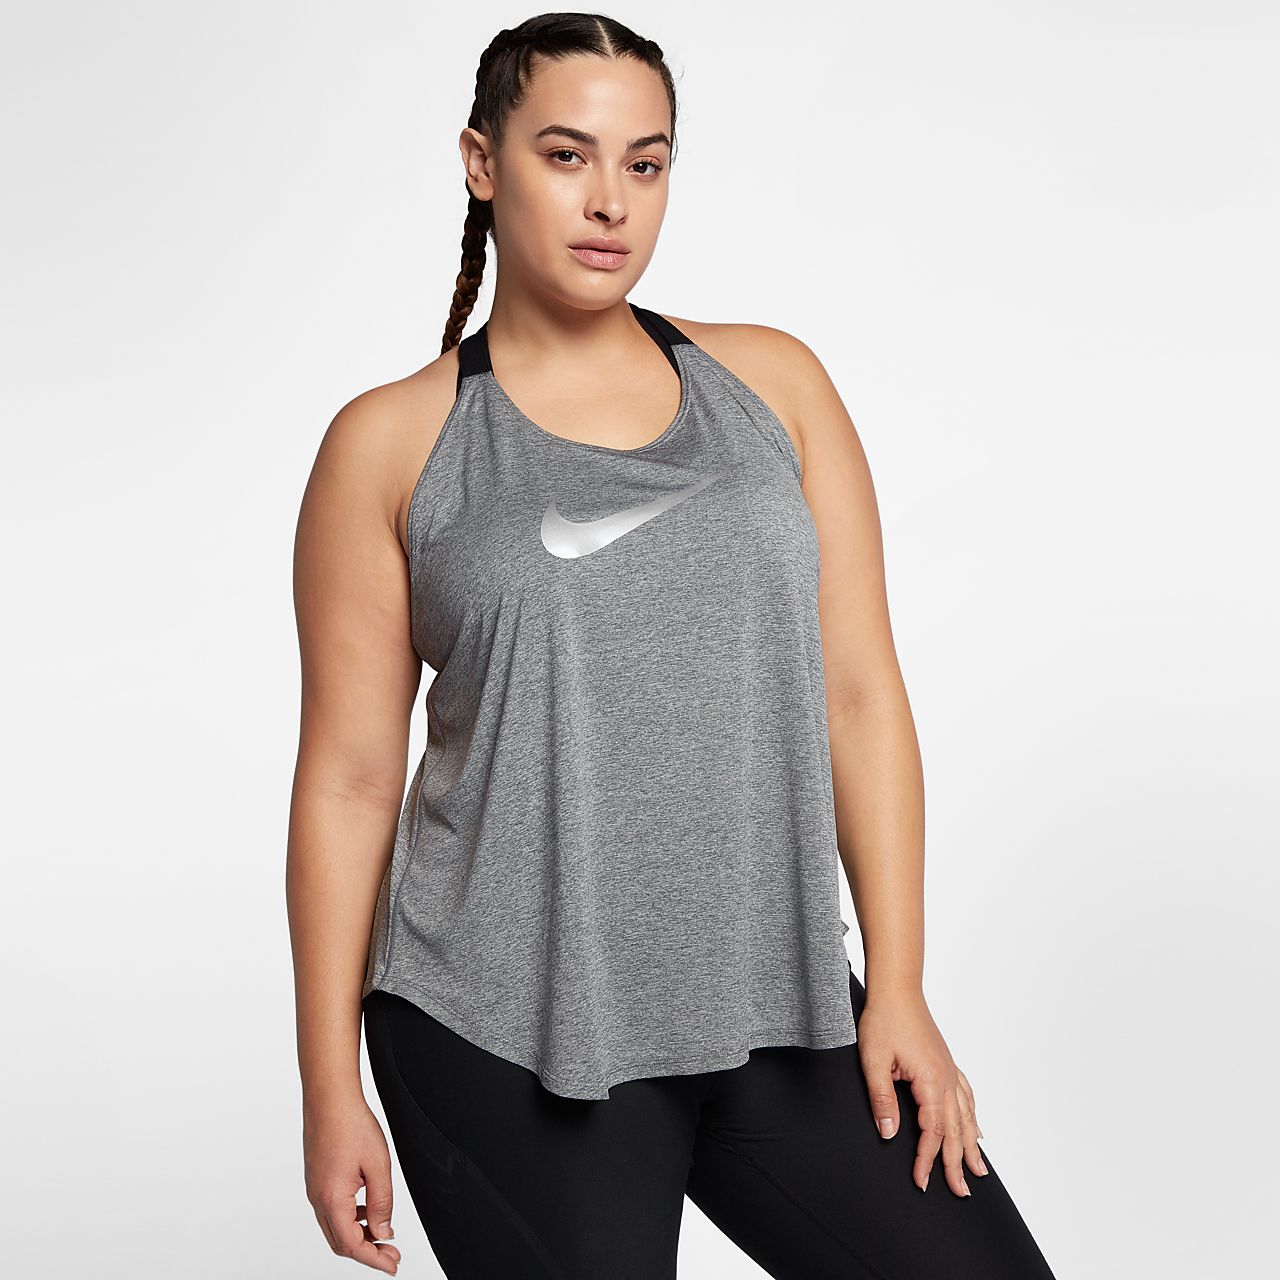 Camisola de treino sem mangas Nike Breathe Elastika para mulher (tamanhos grandes)